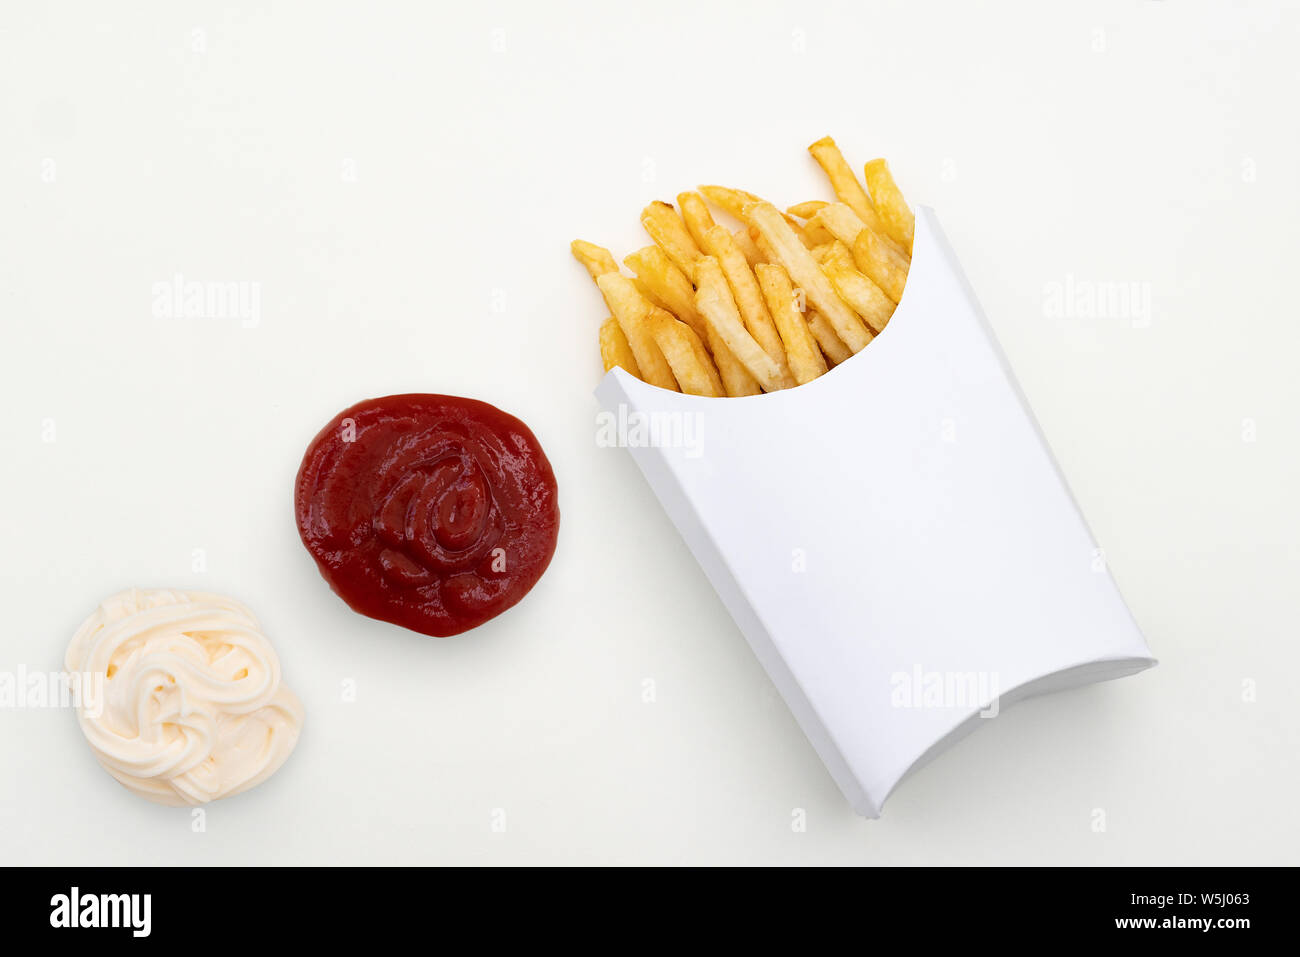 Une portion de frites dans une boîte en carton blanc. Un blob de ketchup et une touche de mayonnaise. Emballage blanc offre un espace pour votre propre copie Banque D'Images